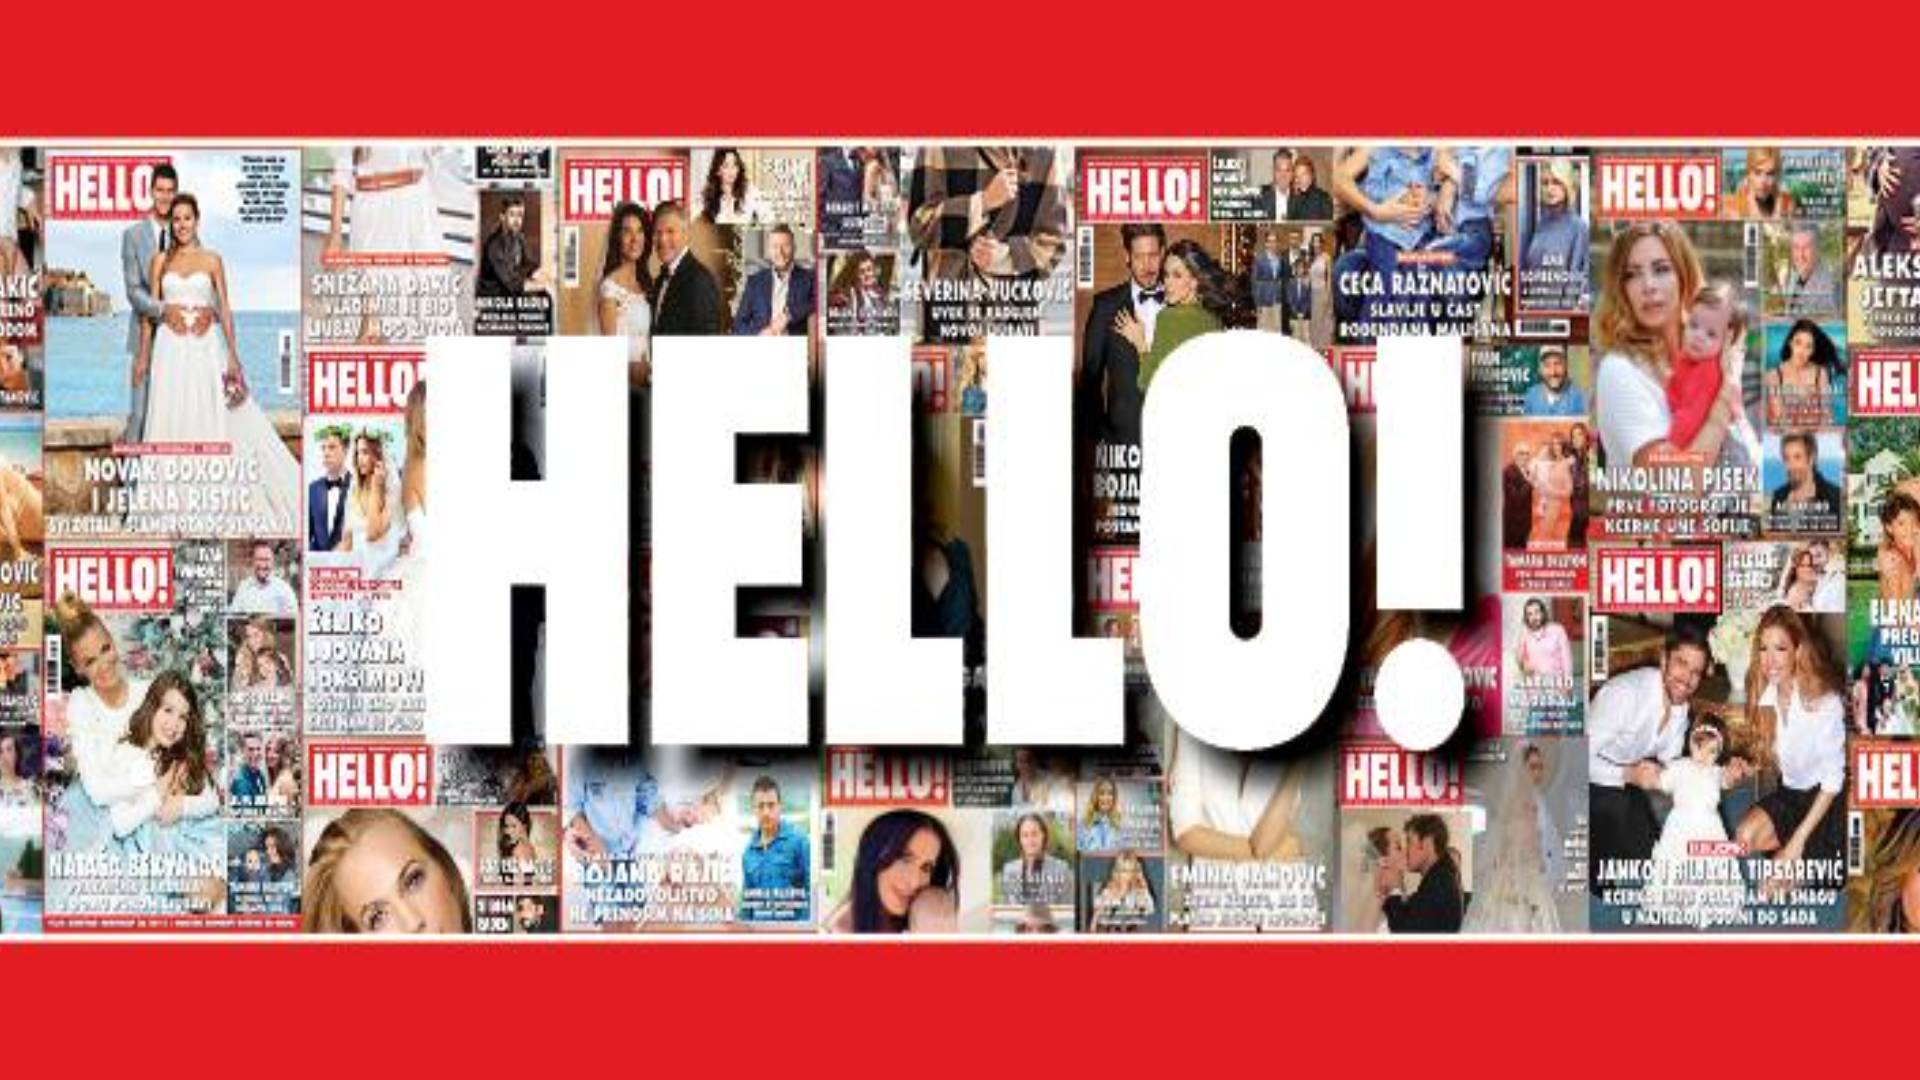 EKSKLUZIVNO: Samo u magazinu "Hello!" u broju od 22. septembra zvanične fotografije sa crkvenog venčanja i spektakularnog svadbenog veselja Željka i Jovane Joksimović, kao i intervju sa mladencima